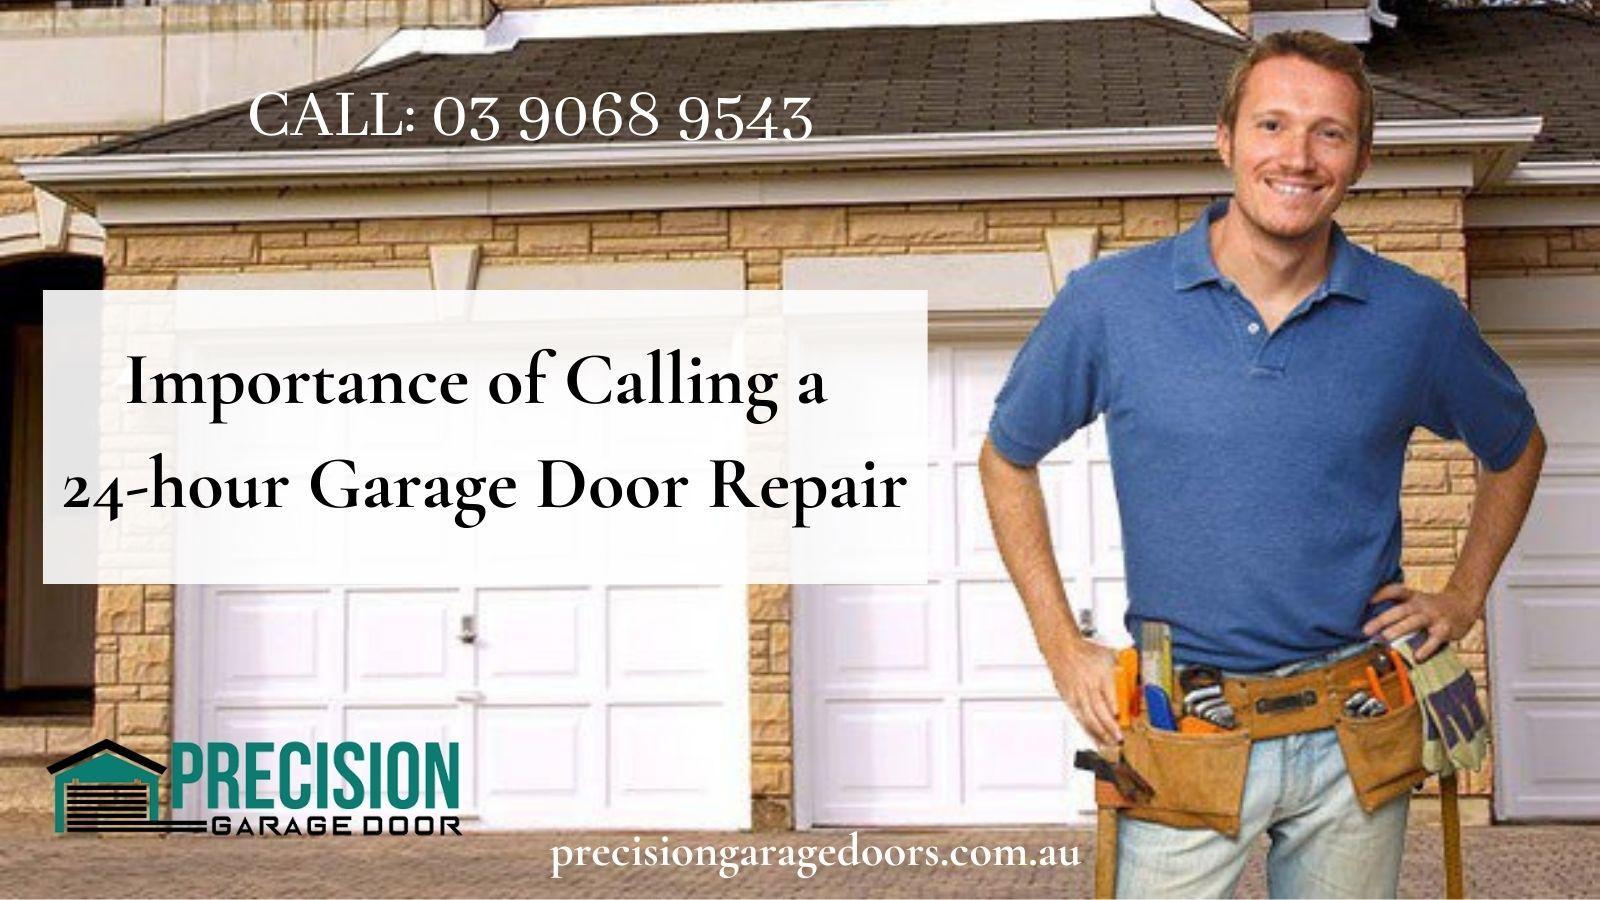 24-hour Garage Door Repair